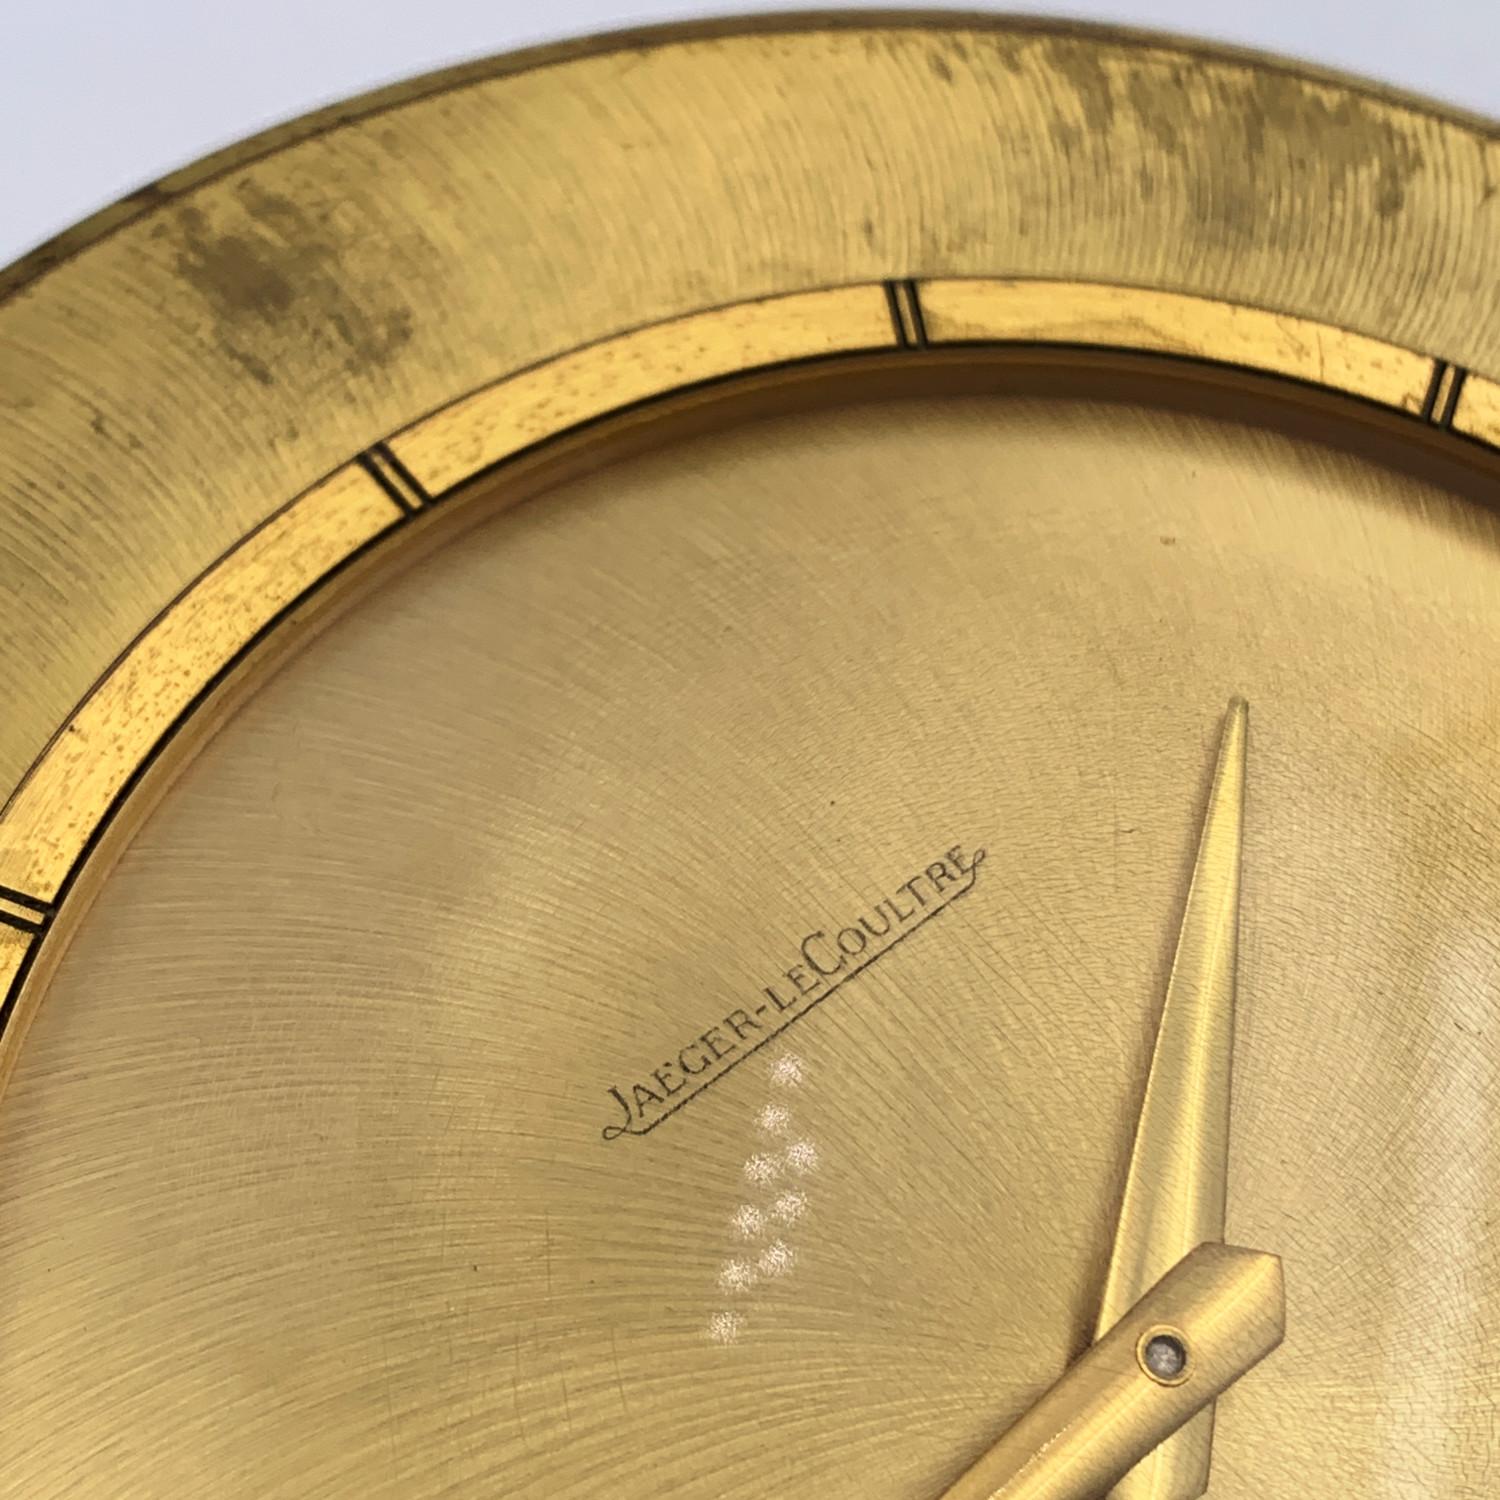 Jaeger LeCoutre for Hermes Vintage Round Gold Metal Desk Clock 5